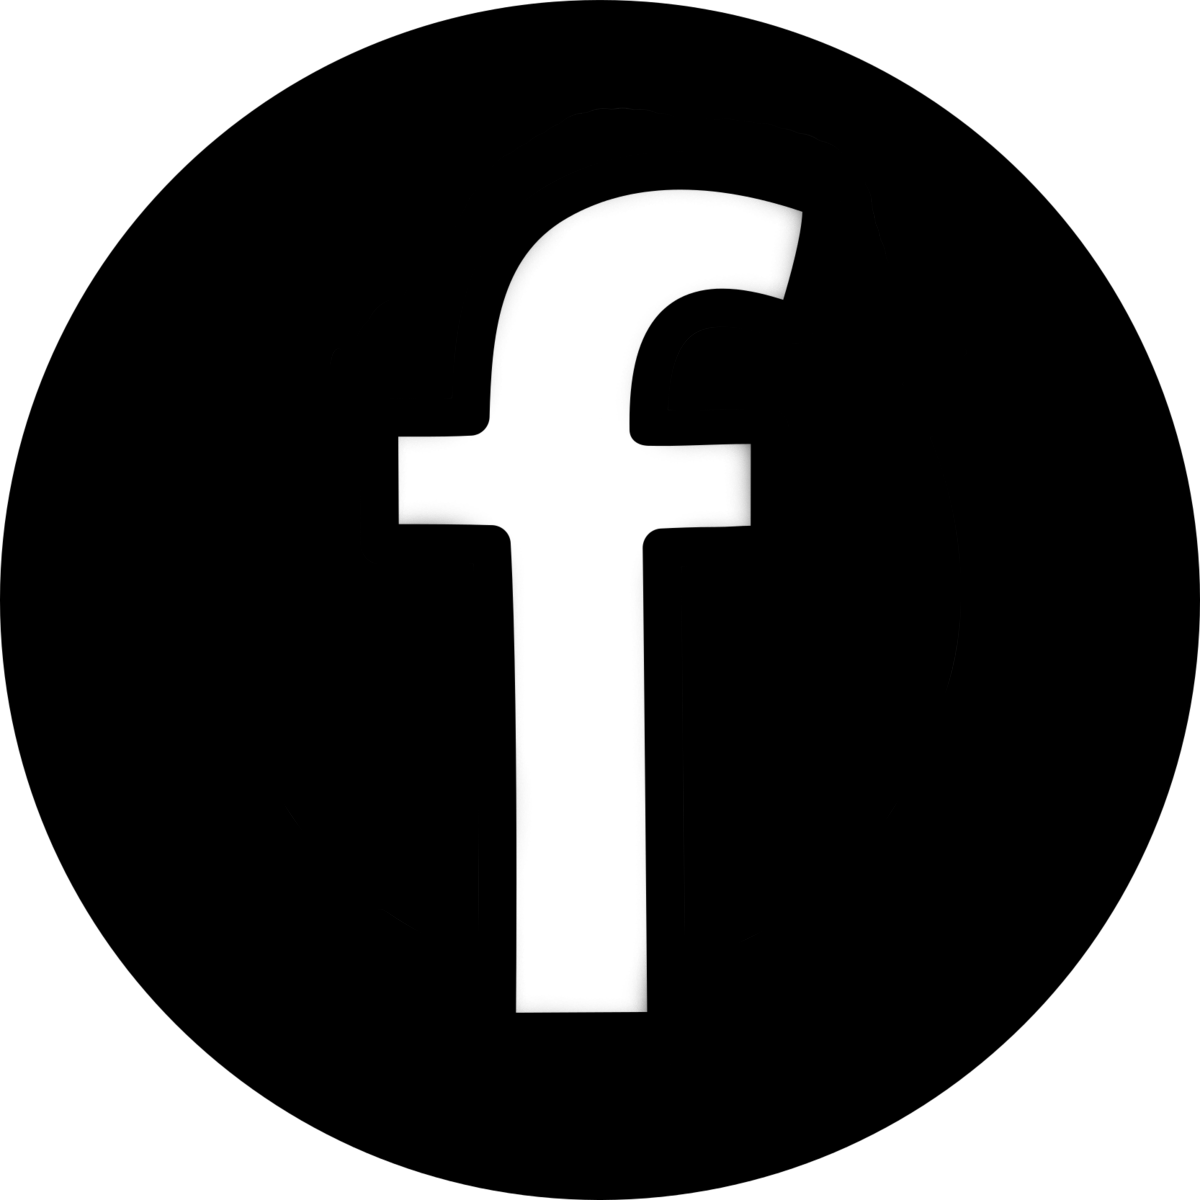 Facebook logo transparent pictures. Twitter png black